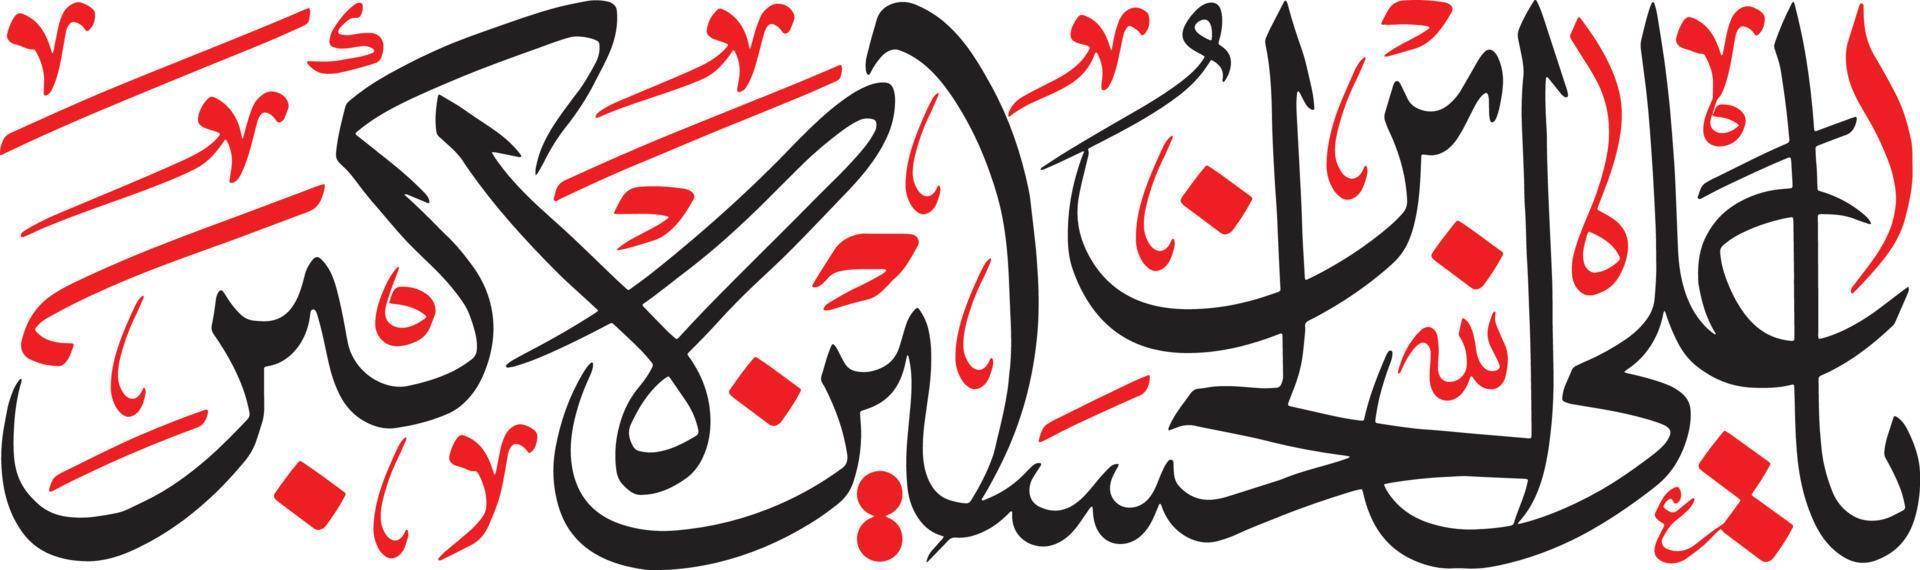 abi Islamitisch Arabisch schoonschrift vrij vector